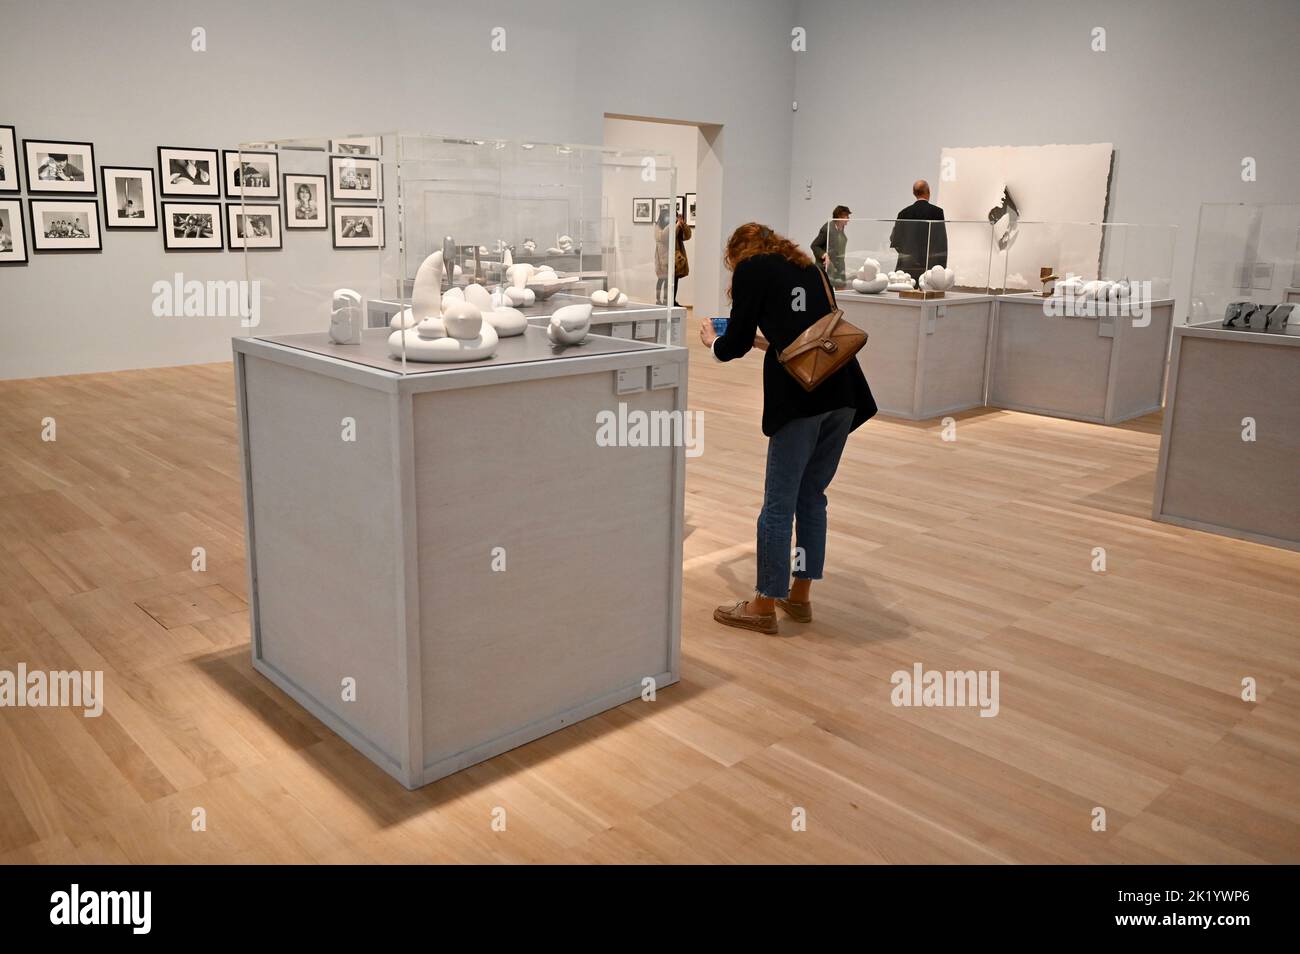 Londres, Reino Unido. Tate Modern presenta la primera gran exposición del Reino Unido de Maria Bartuszova (1936-1996), una artista que definió el mundo de la escultura en sus propios términos utilizando métodos innovadores de fundición de yeso. Foto de stock